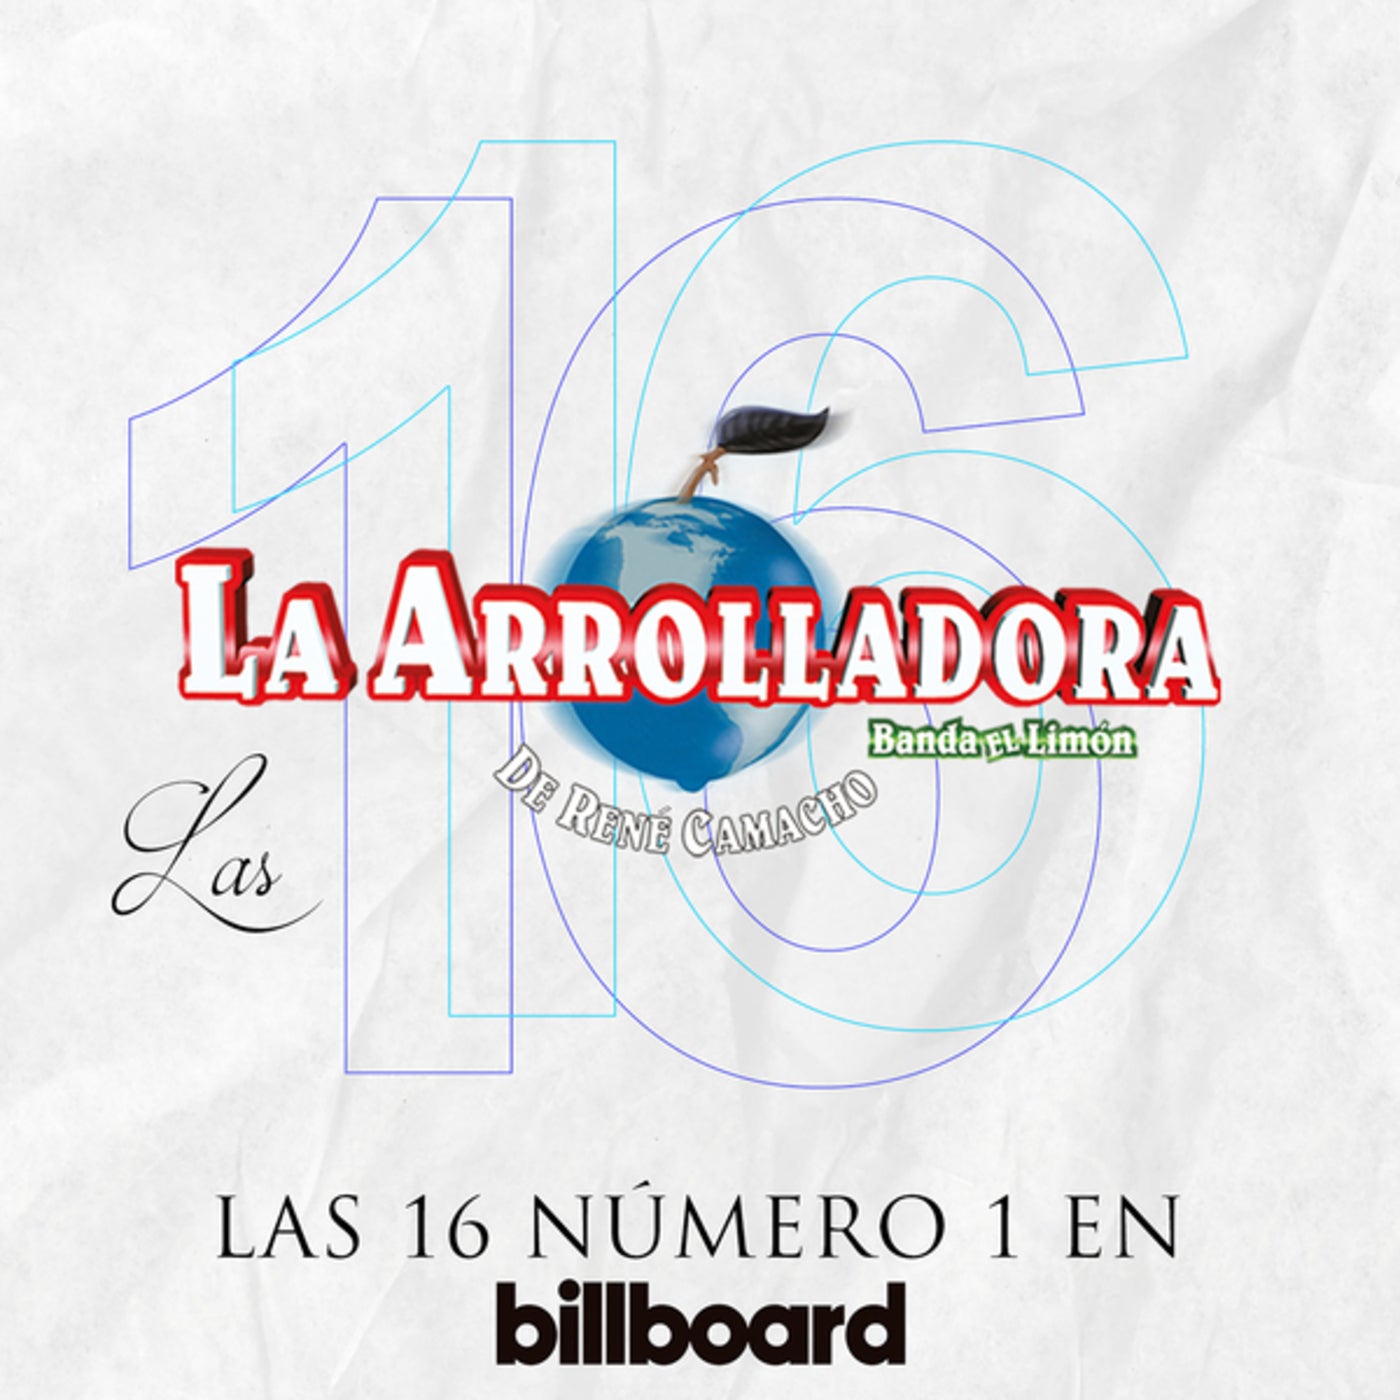 Las 16 Número 1 En Billboard by La Arrolladora Banda El Limón De René  Camacho and Espinoza Paz on Beatsource